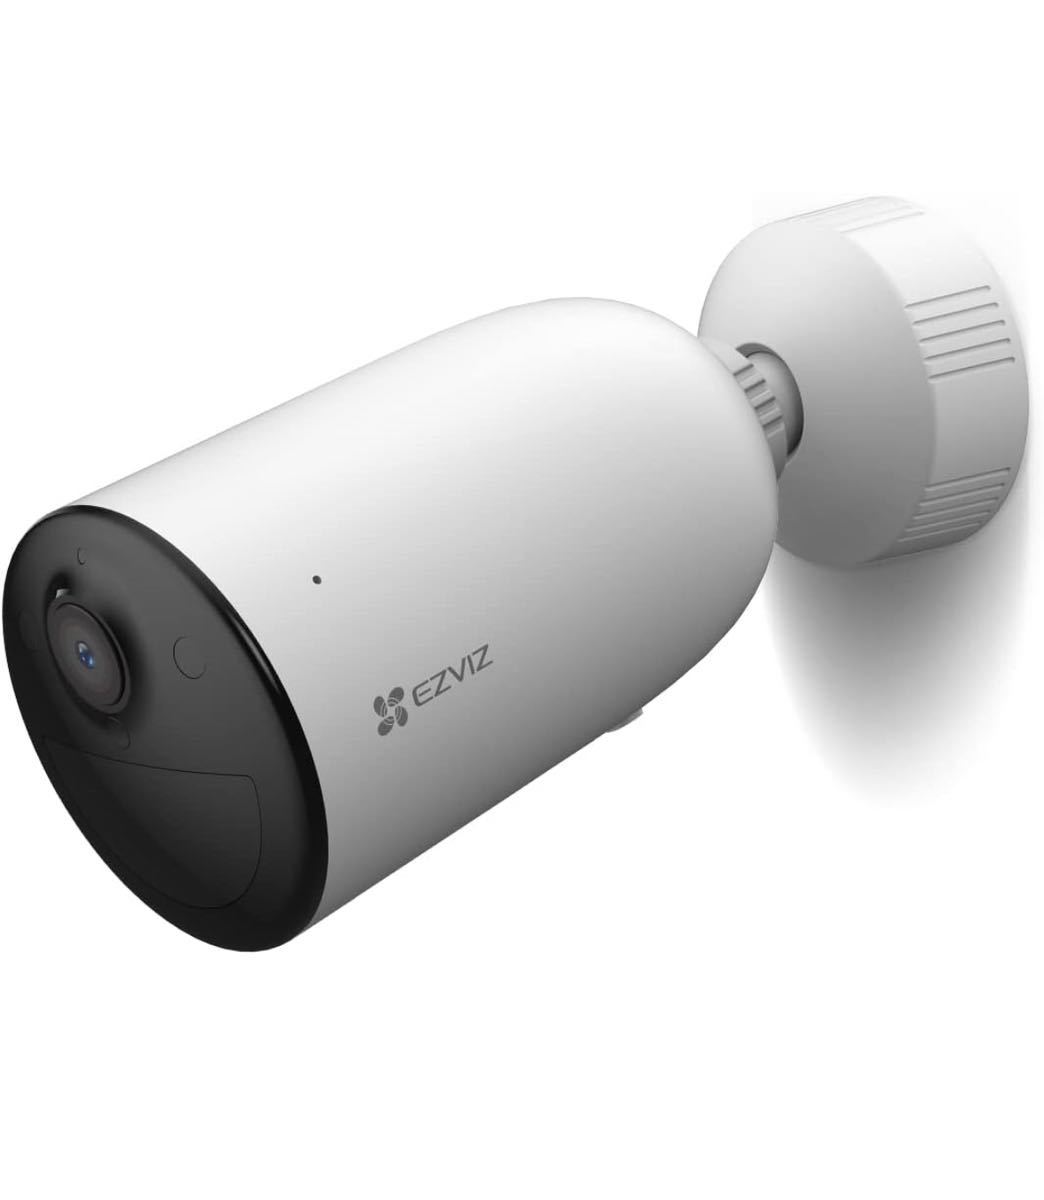 監視カメラ 屋外 防犯カメラ EZVIZ 1080P 完全無線のサムネイル